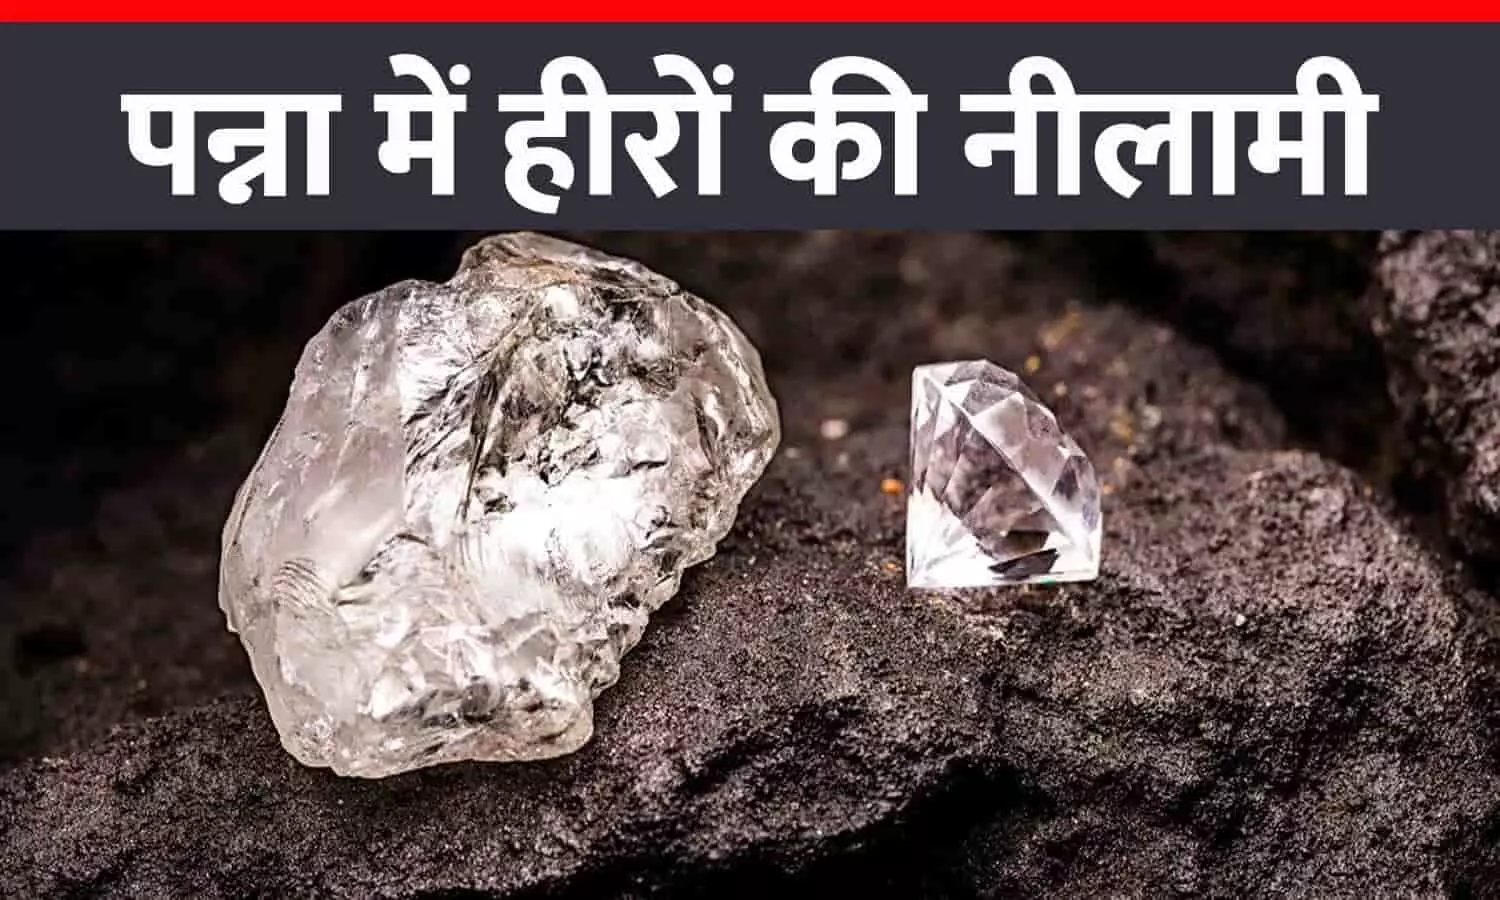 पन्ना में हीरे की नीलामी शुरू: पहले दिन 83 लाख रुपये के हीरे बिके